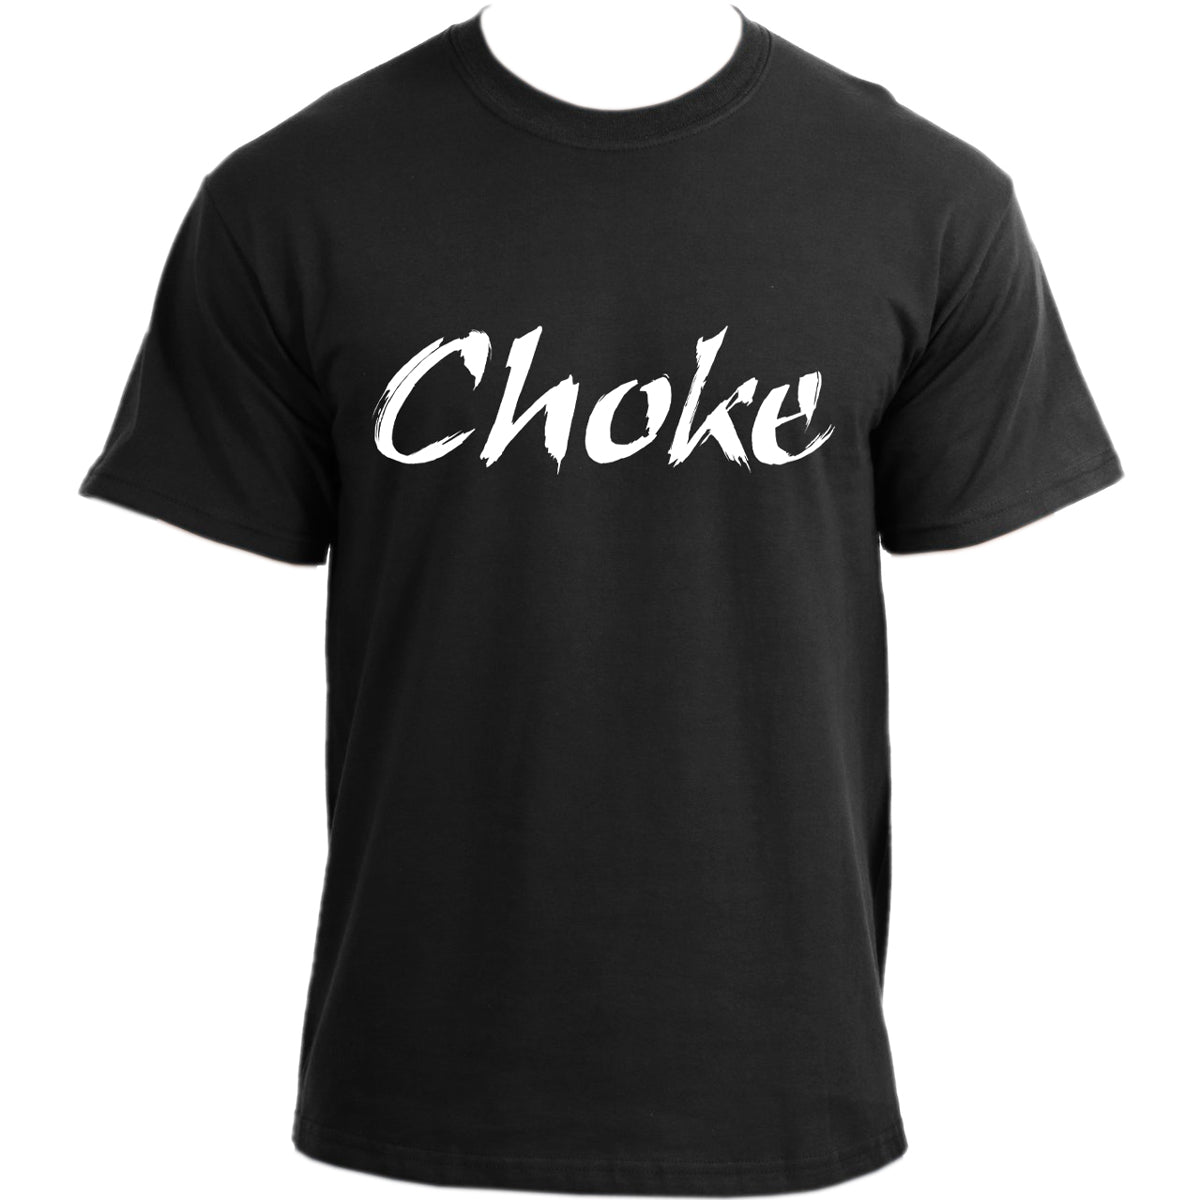 Brazilian Jiu Jitsu Choke Jiu-Jitsu Sports Chokeholds Tee MMA UFC BJJ T-Shirt